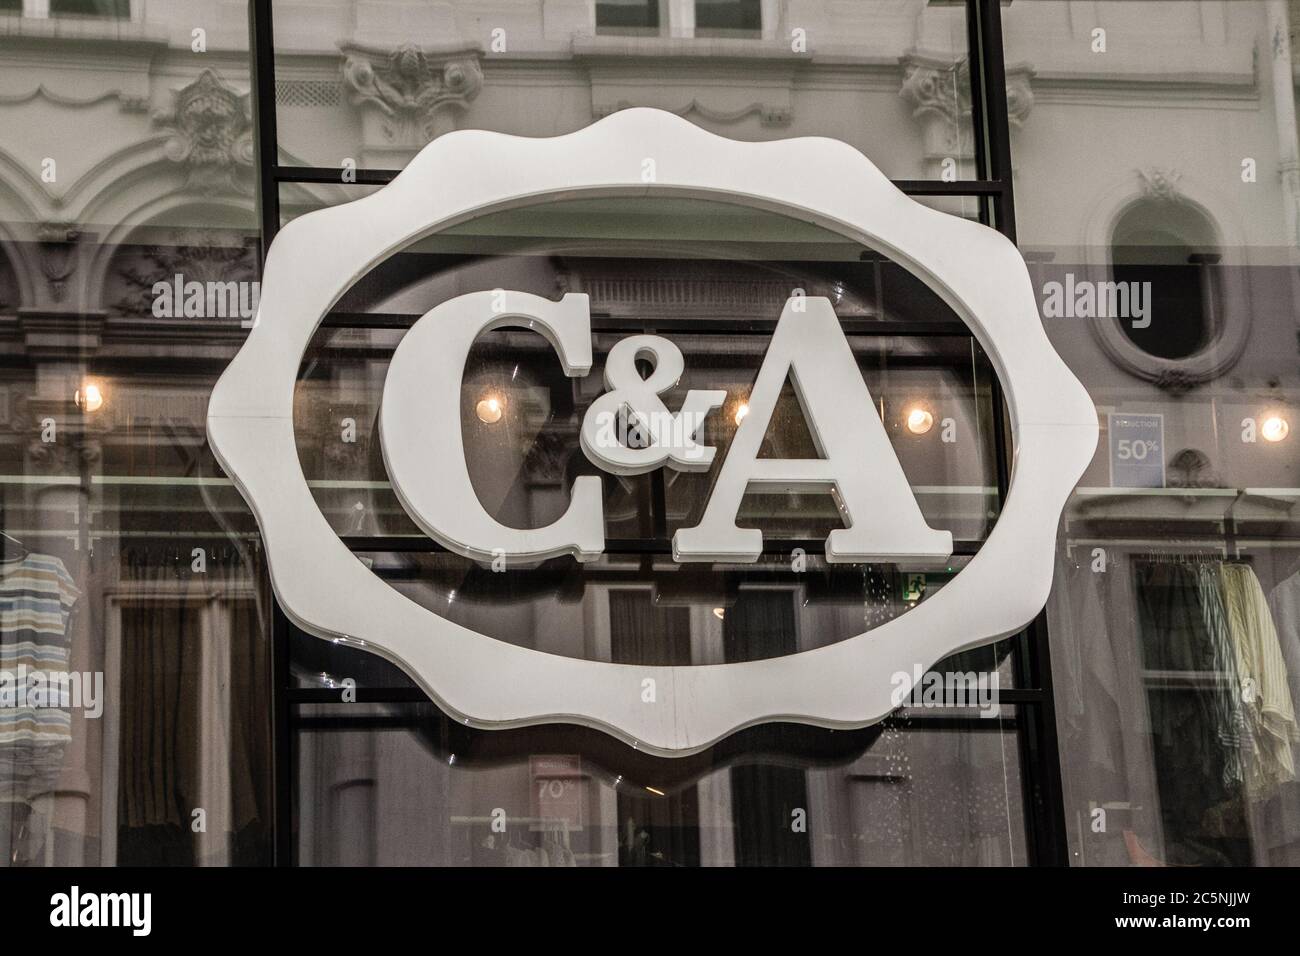 C&A è una catena internazionale di negozi di abbigliamento olandesi. La sua  rete di negozi si